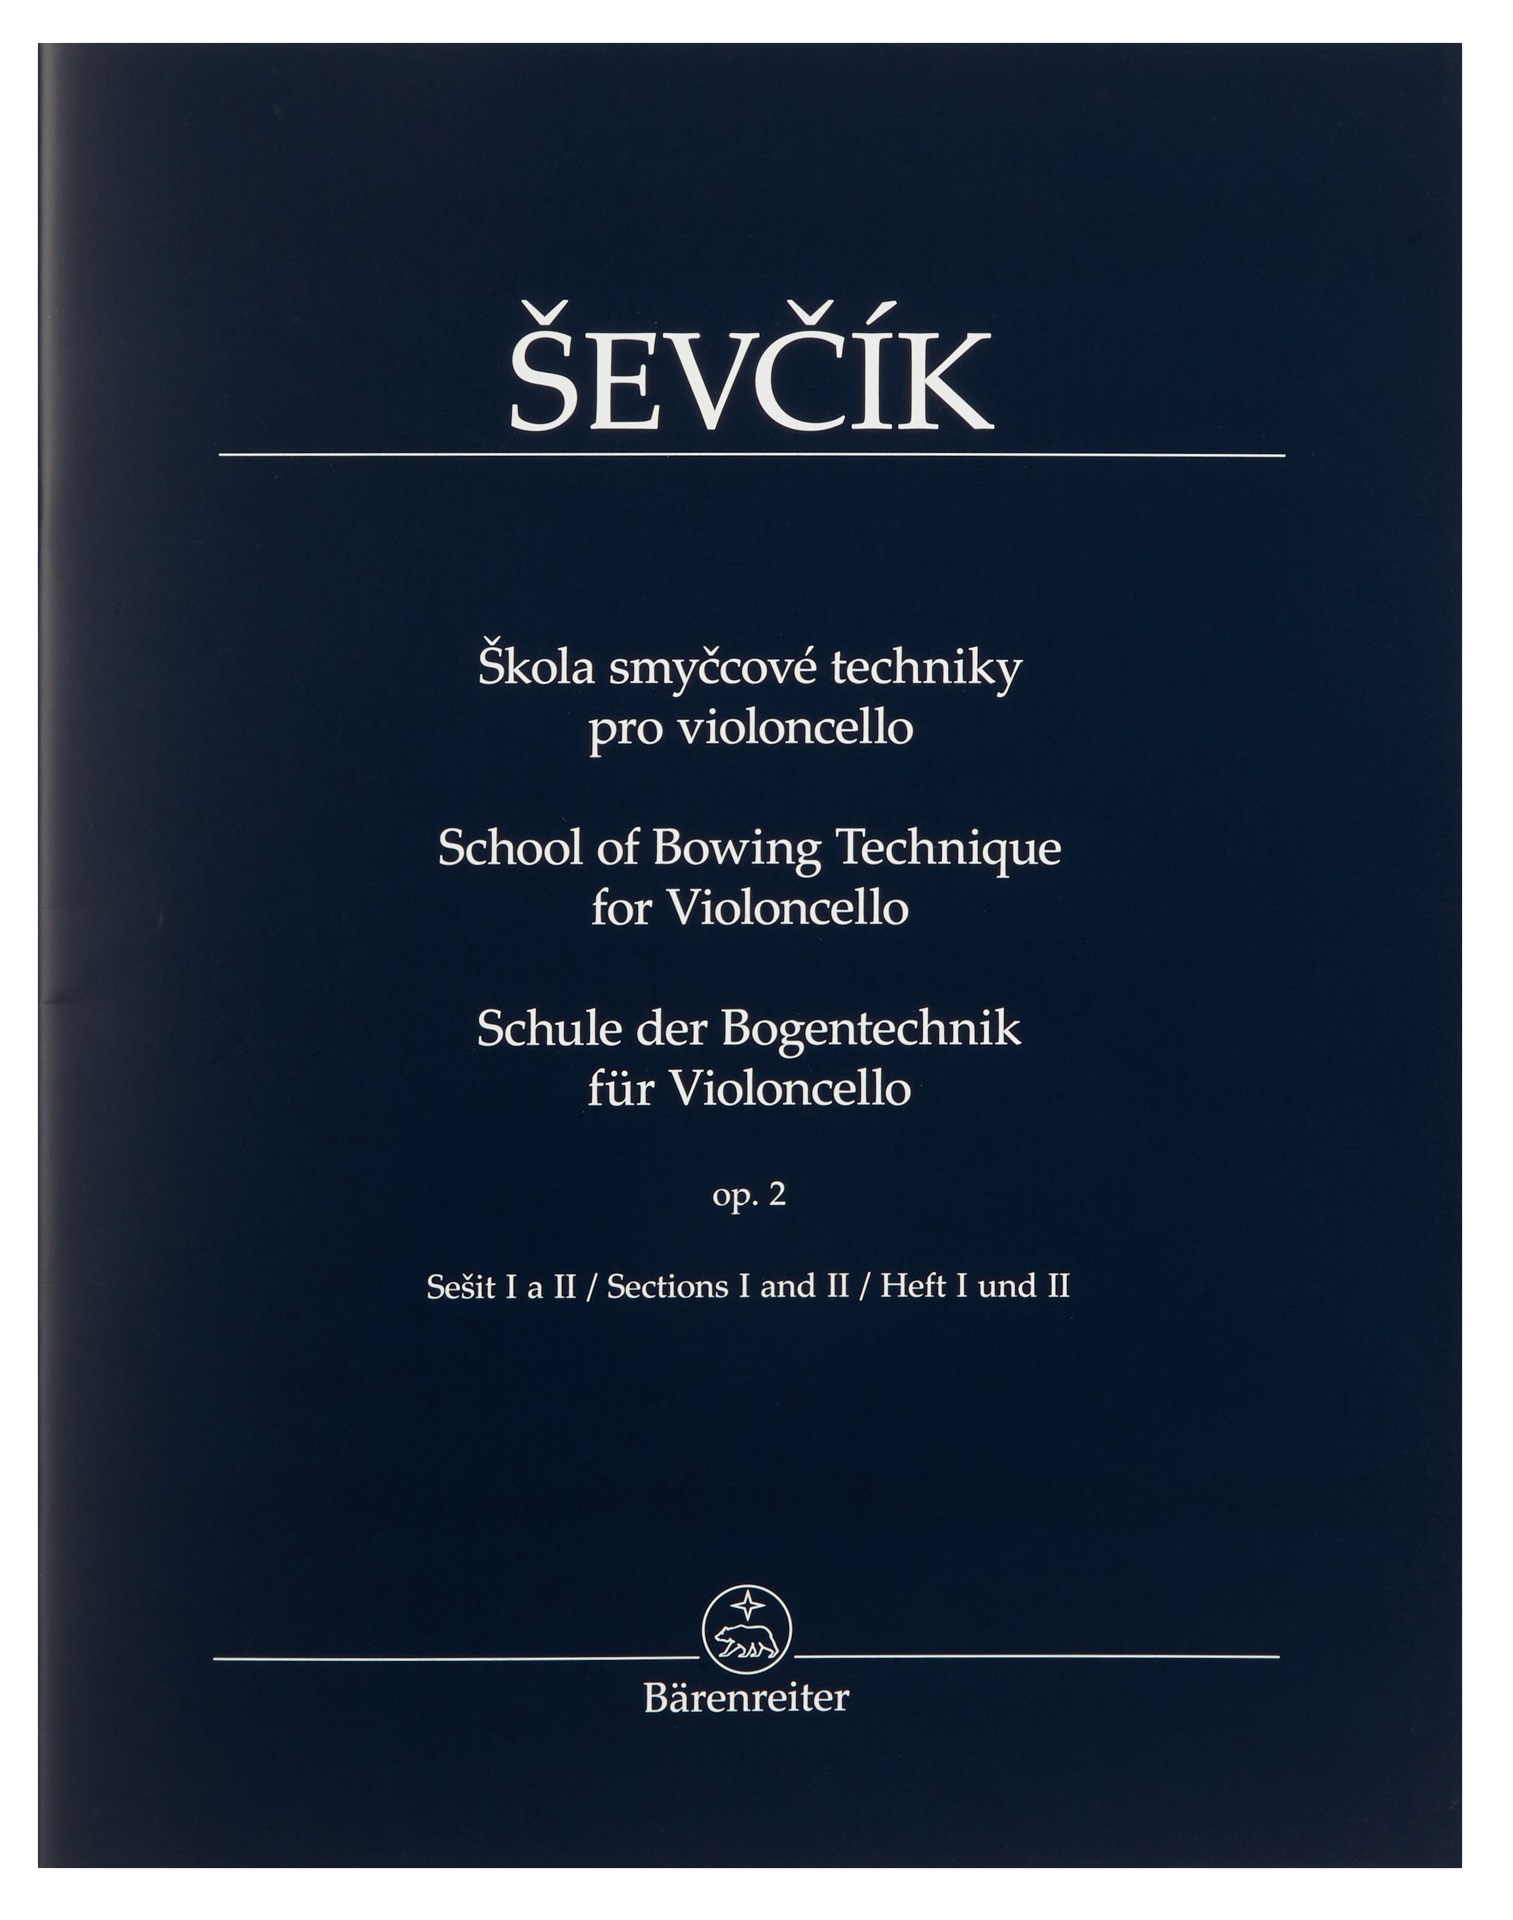 Fotografie Bärenreiter Škola smyčcové techniky pro violoncello op. 2, sešit I a II